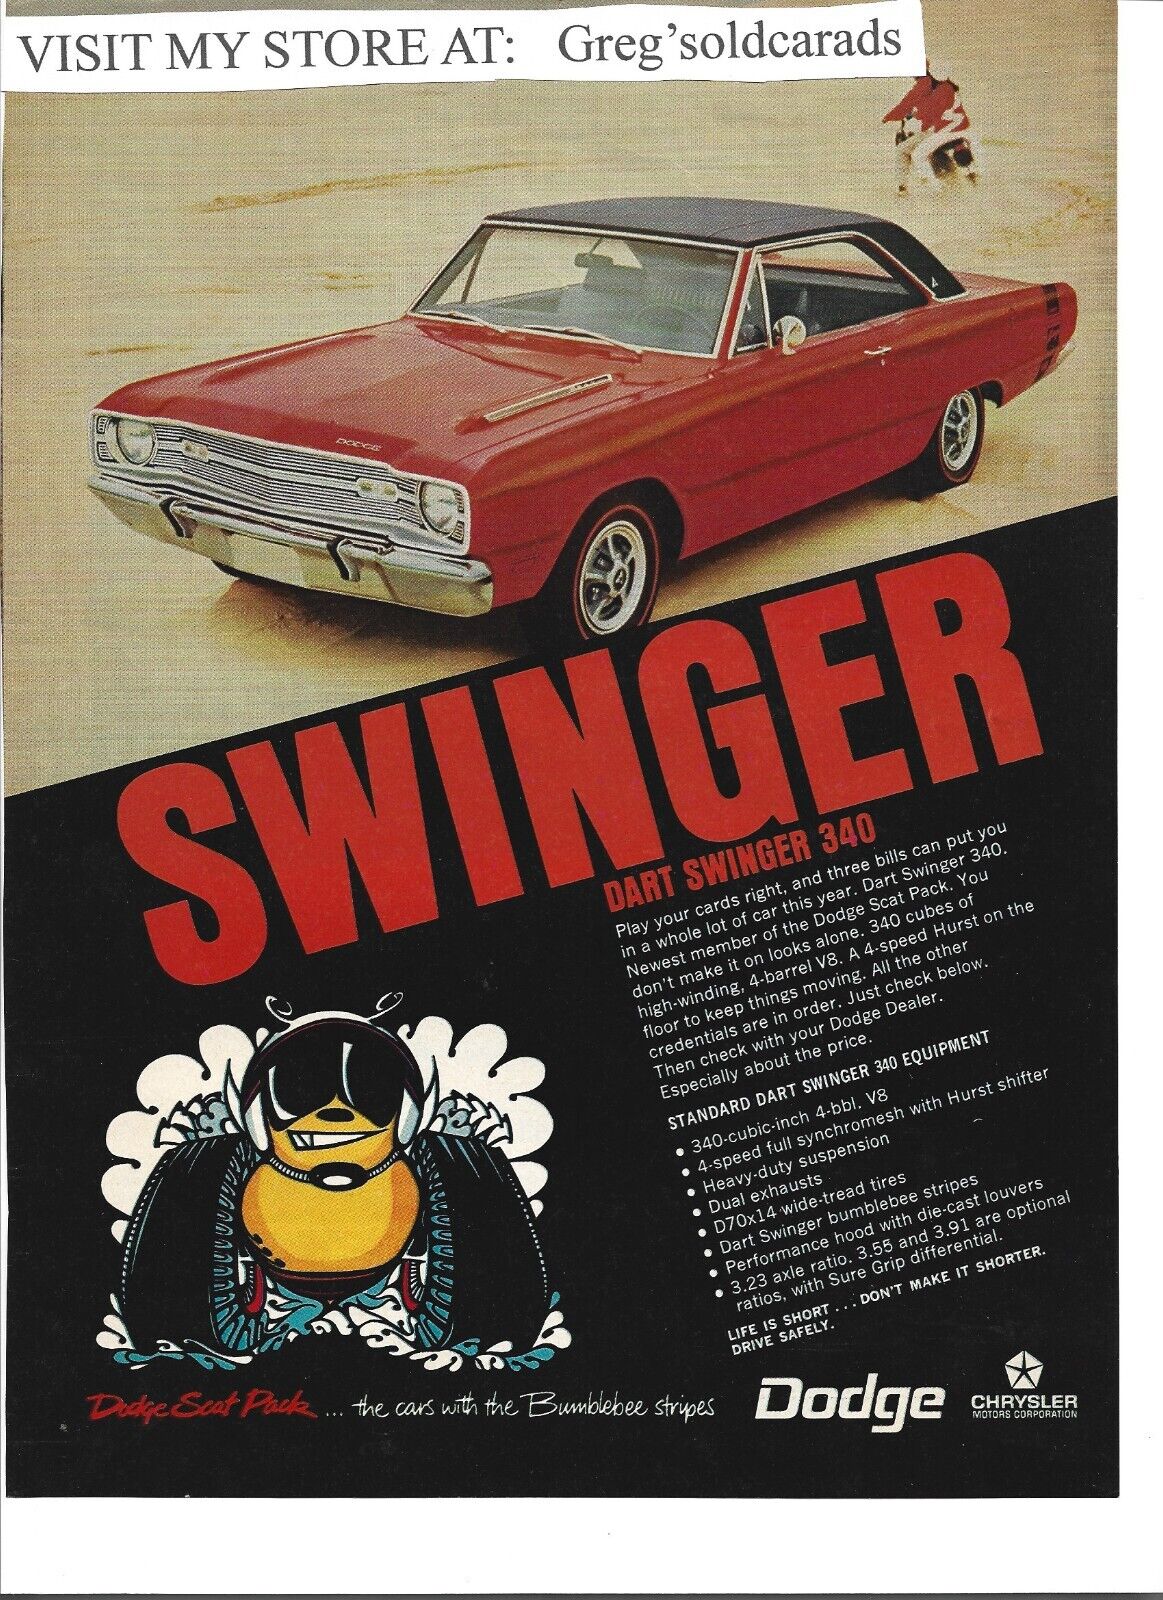 Original 1969 Dodge Dart Swinger 340 print ad, one of the Dodge Scat Pack models